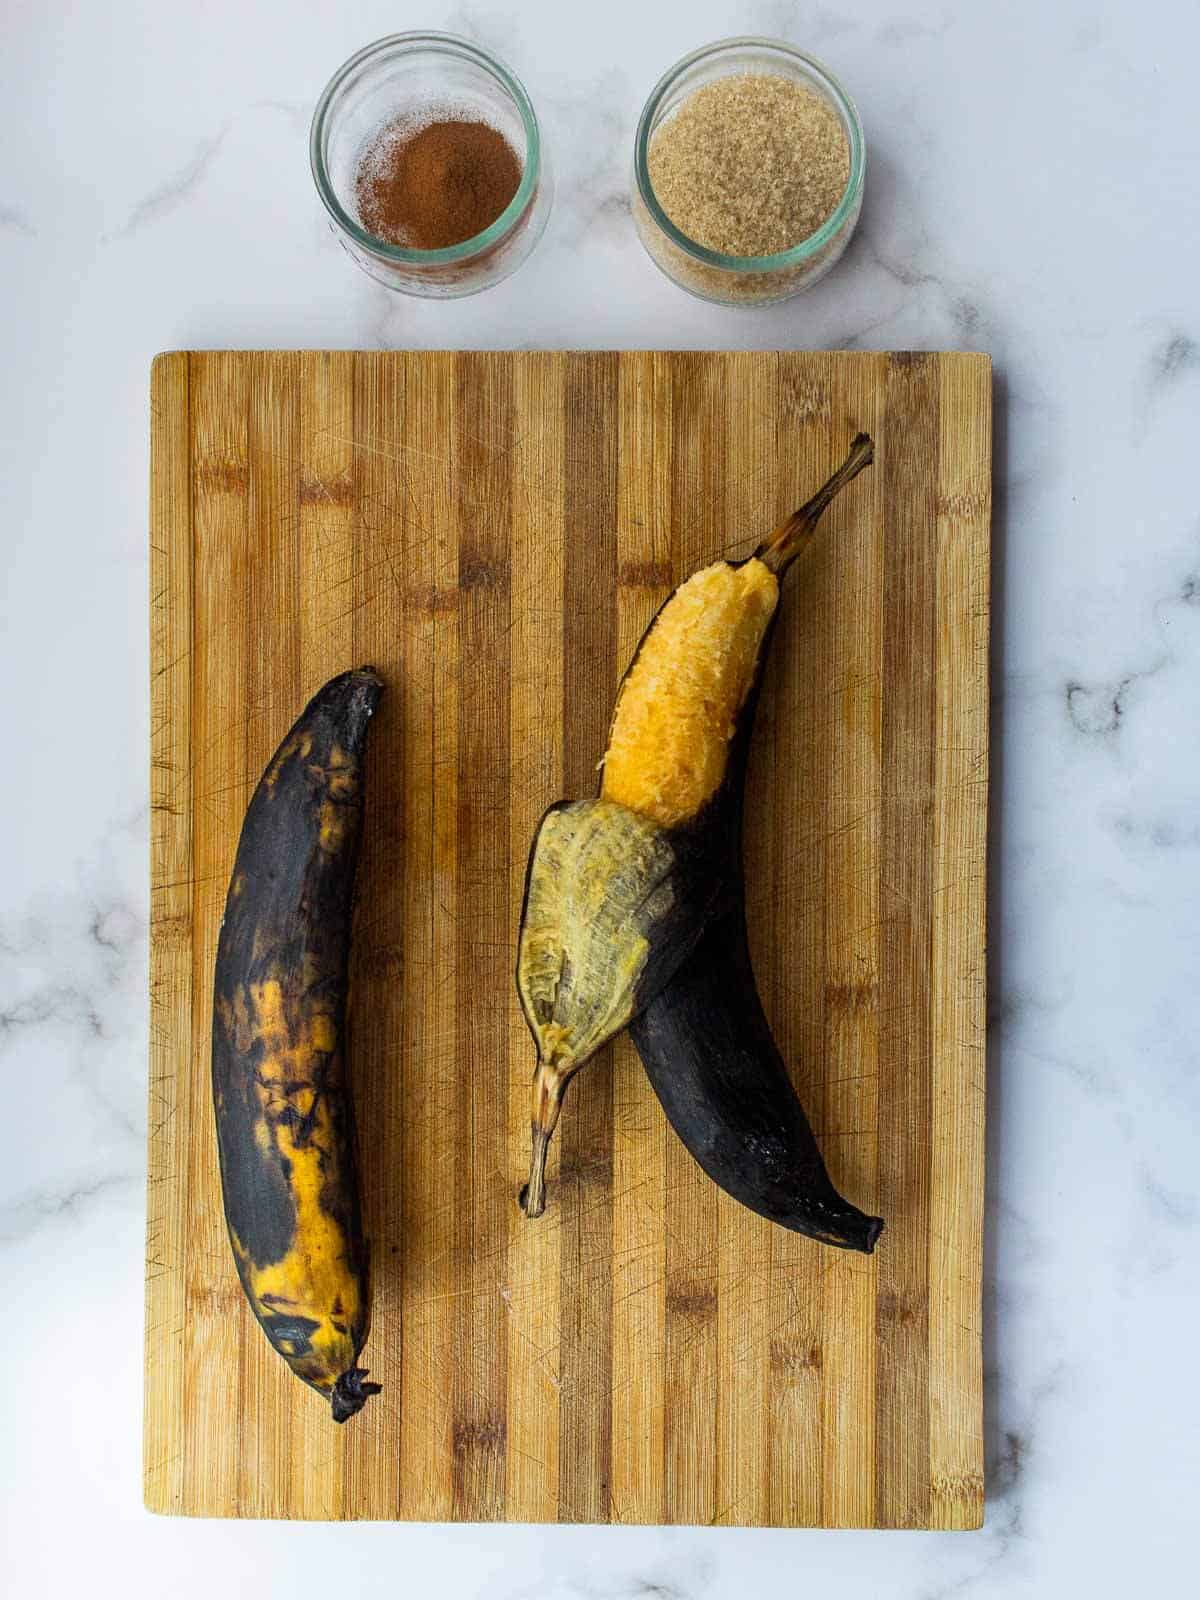 Plátanos en tentación ingredients.